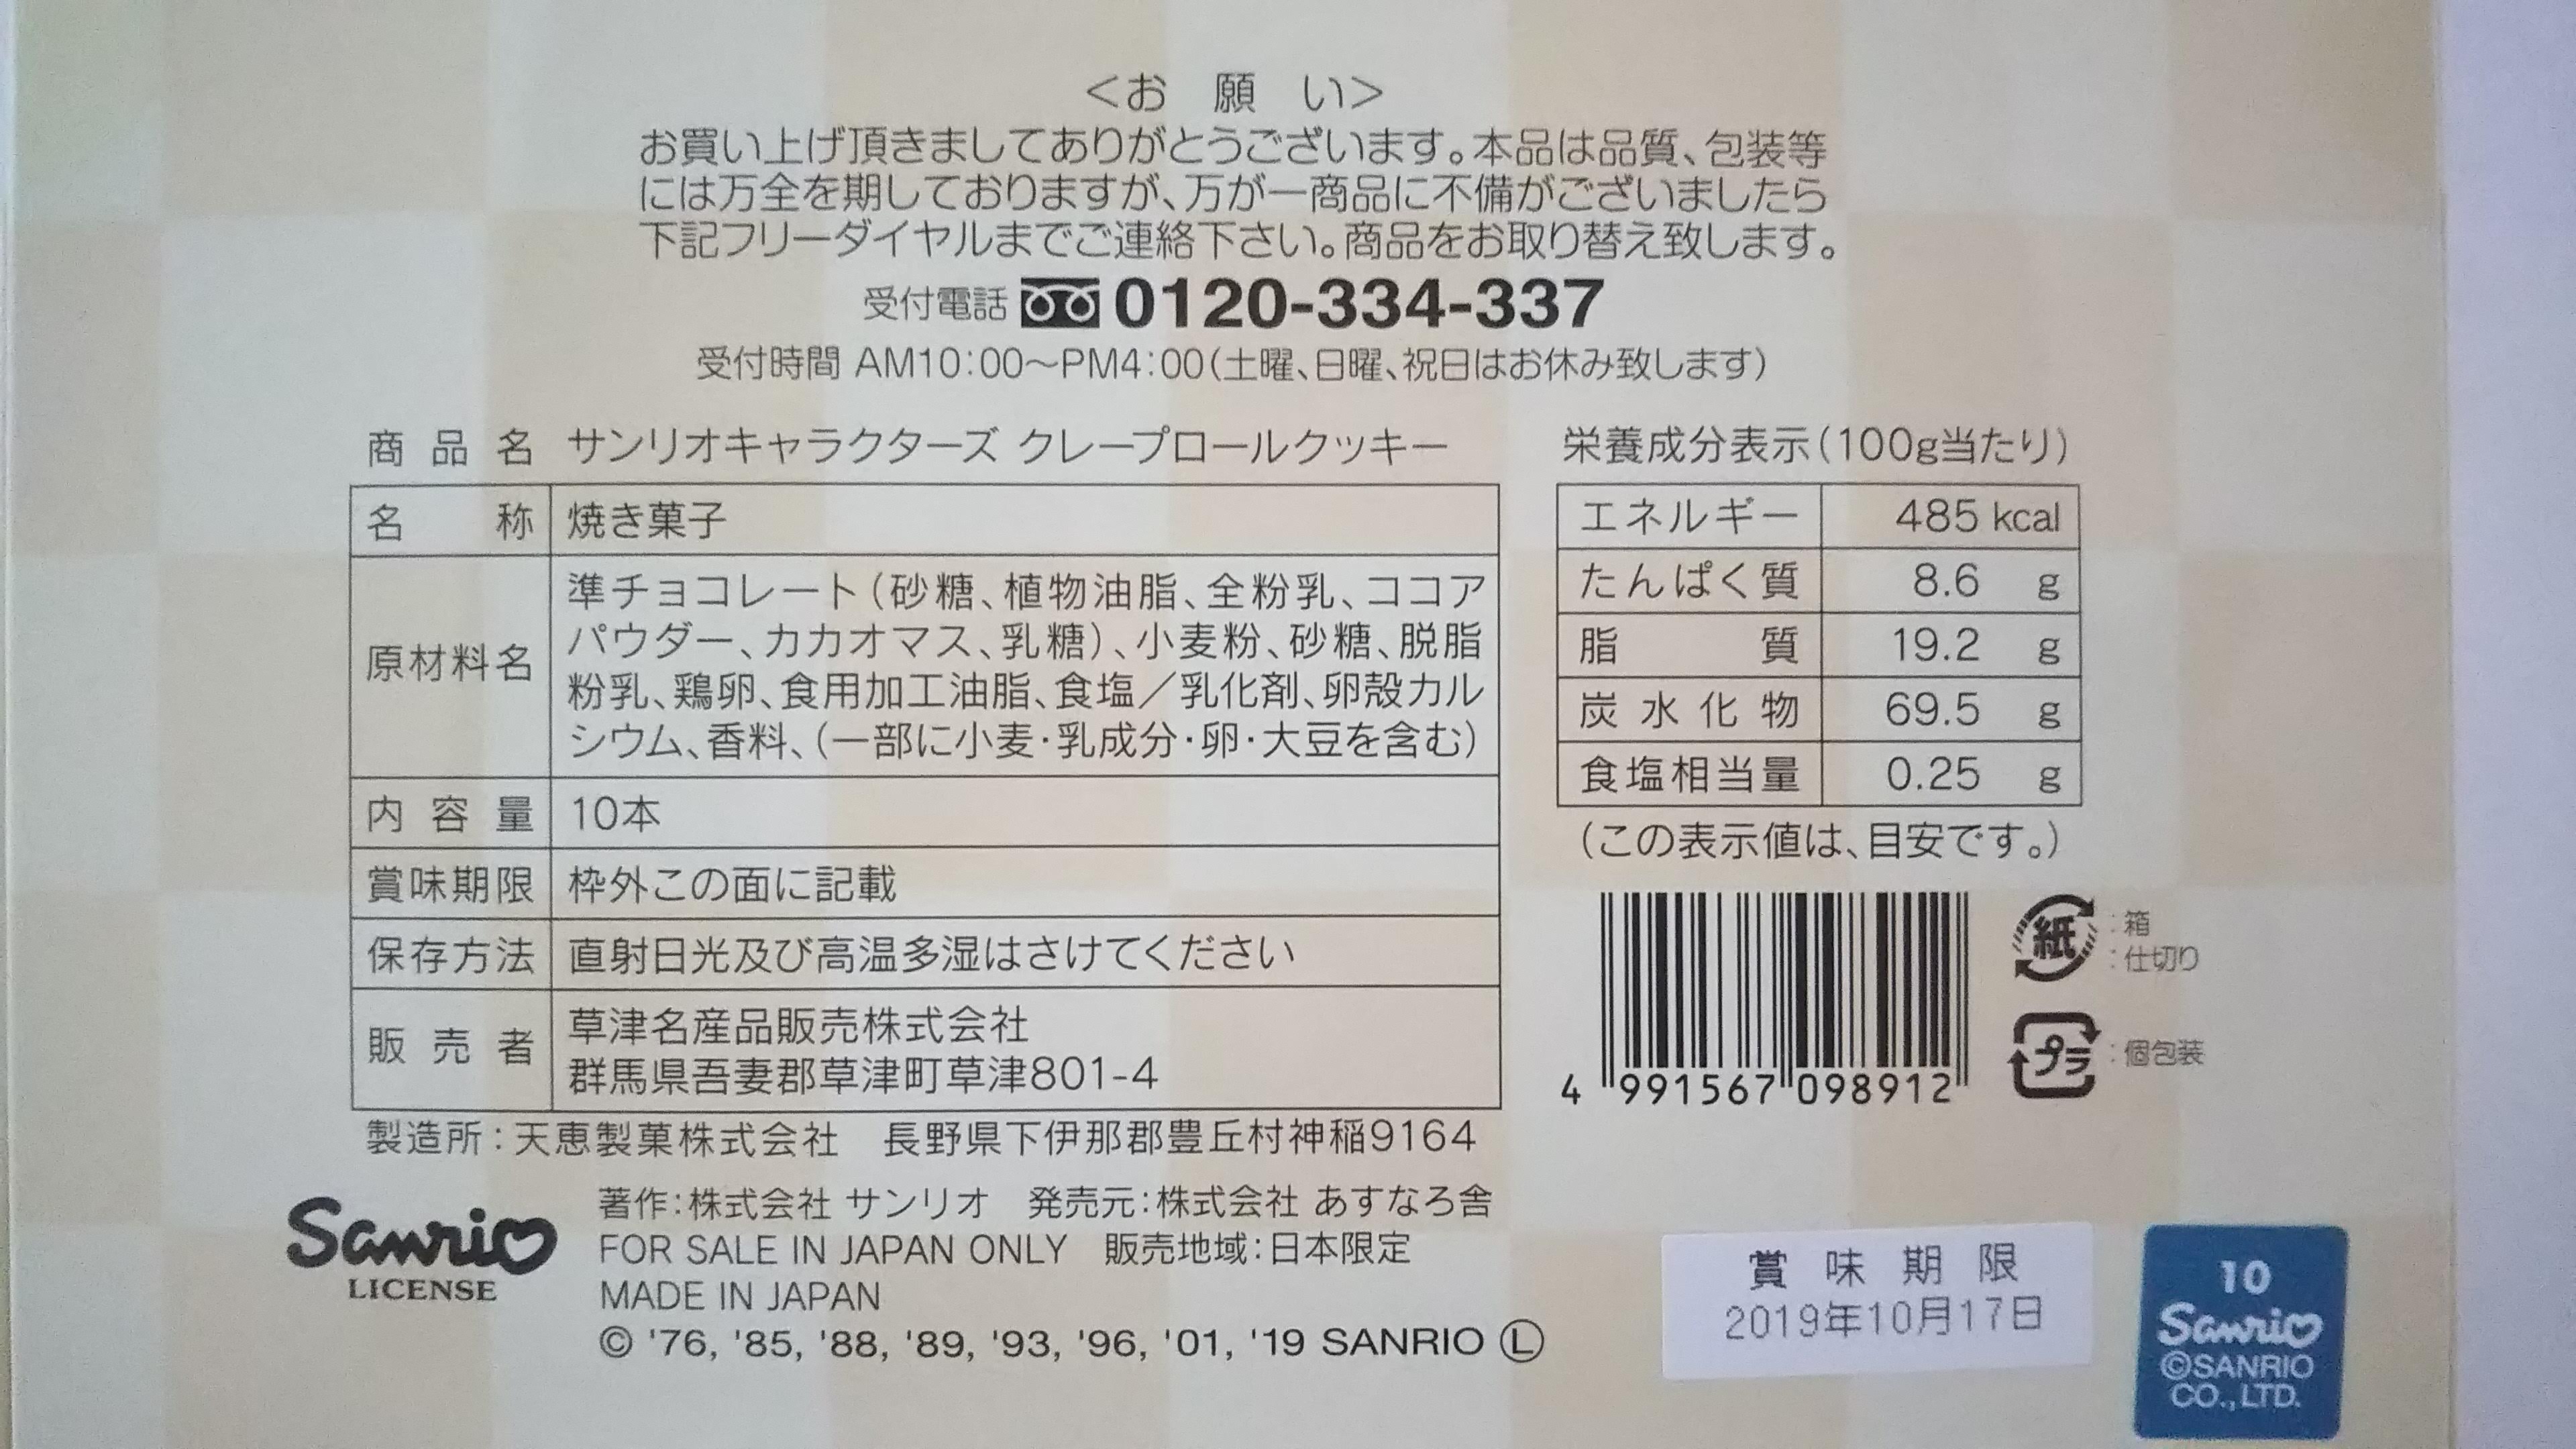 ゆもみちゃんクレープロールクッキー サンリオコラボ 草津名産品製造株式会社